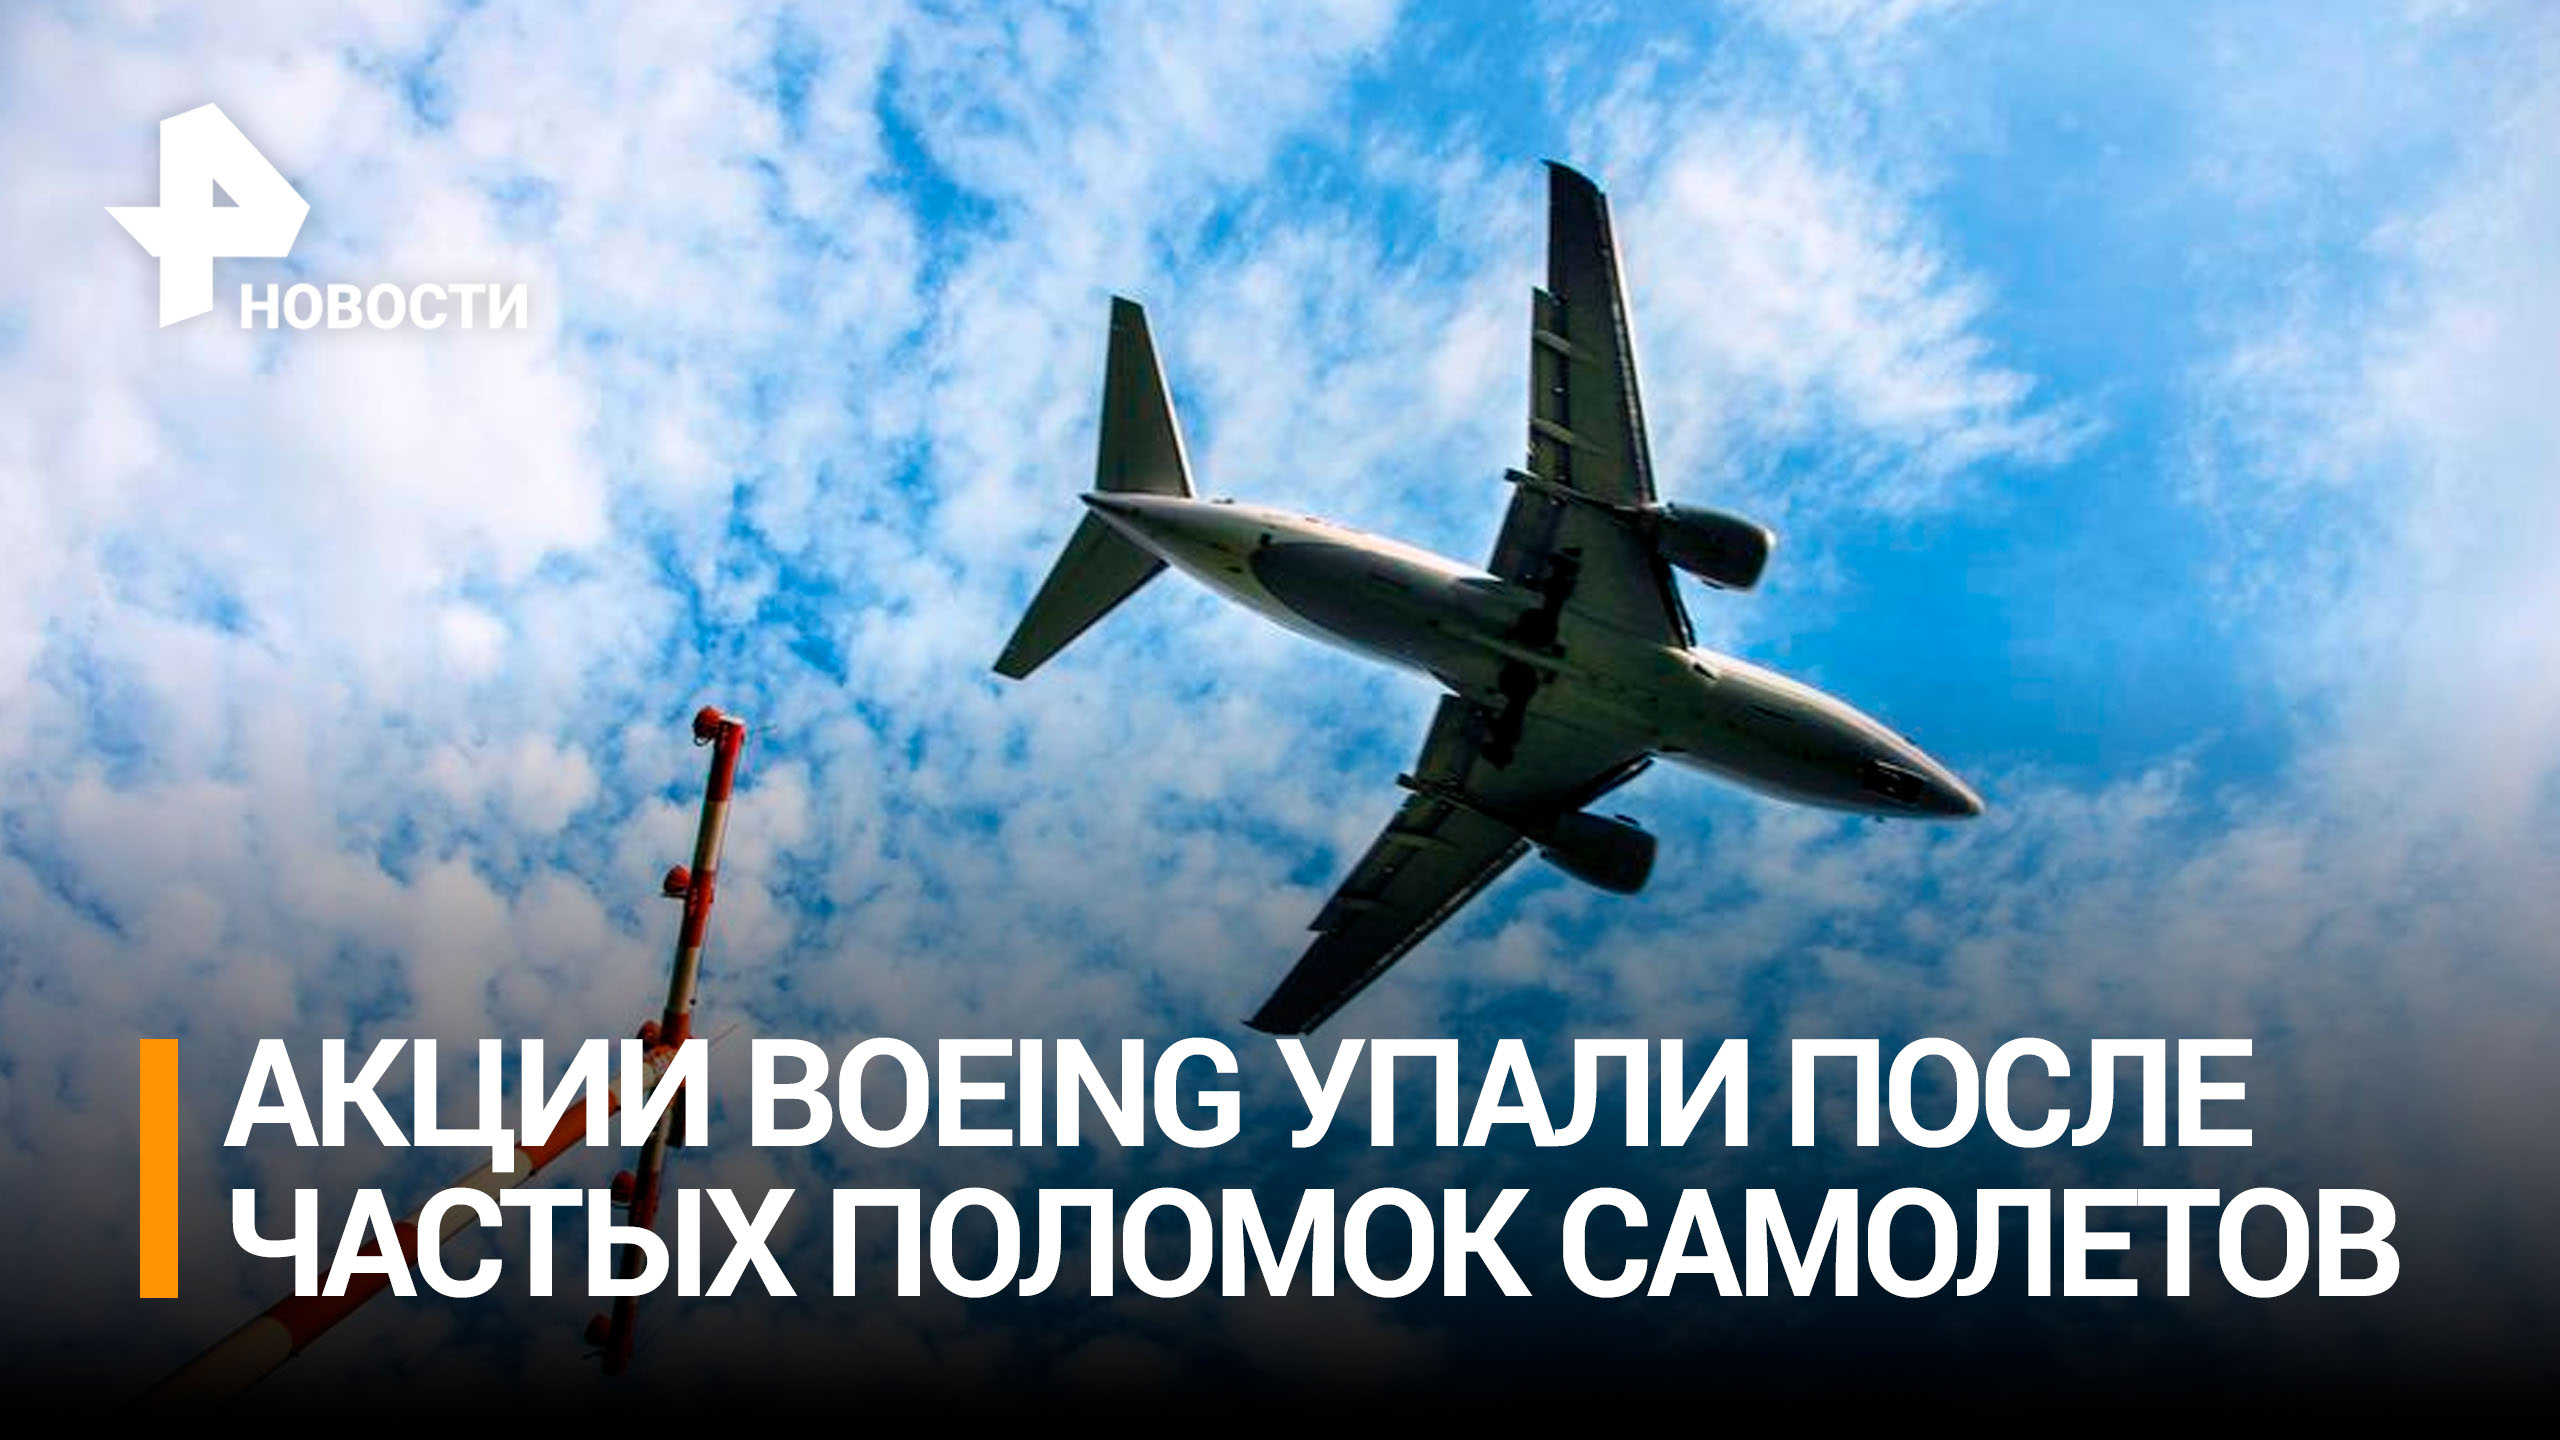 Акции Boeing рухнули после участившихся поломок самолетов / РЕН Новости